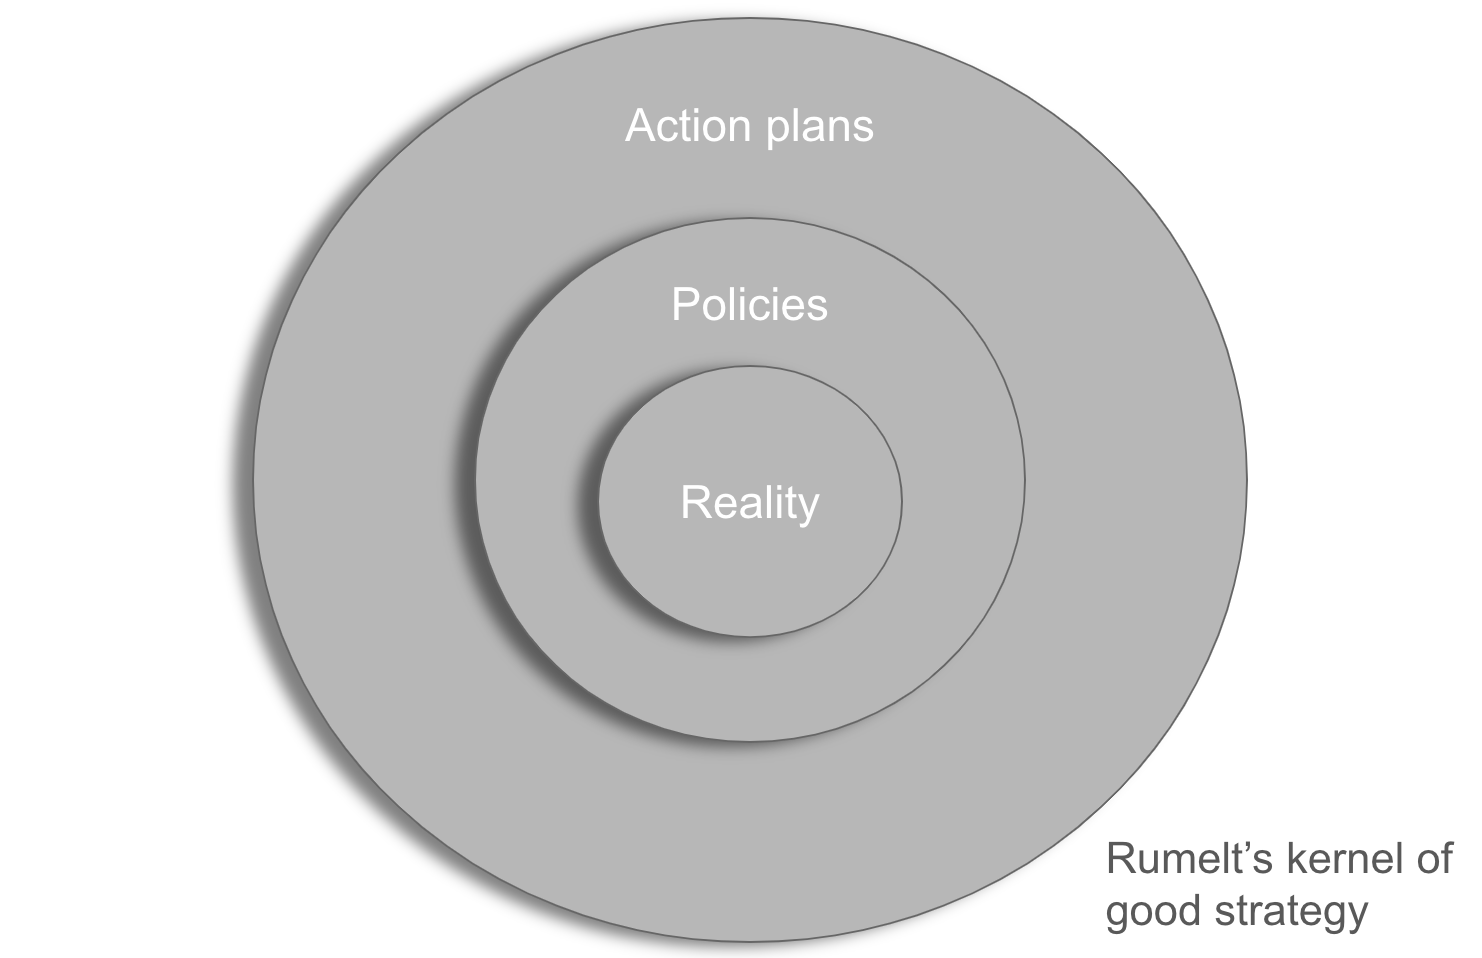 Richard Rumelt's kernel of good strategy